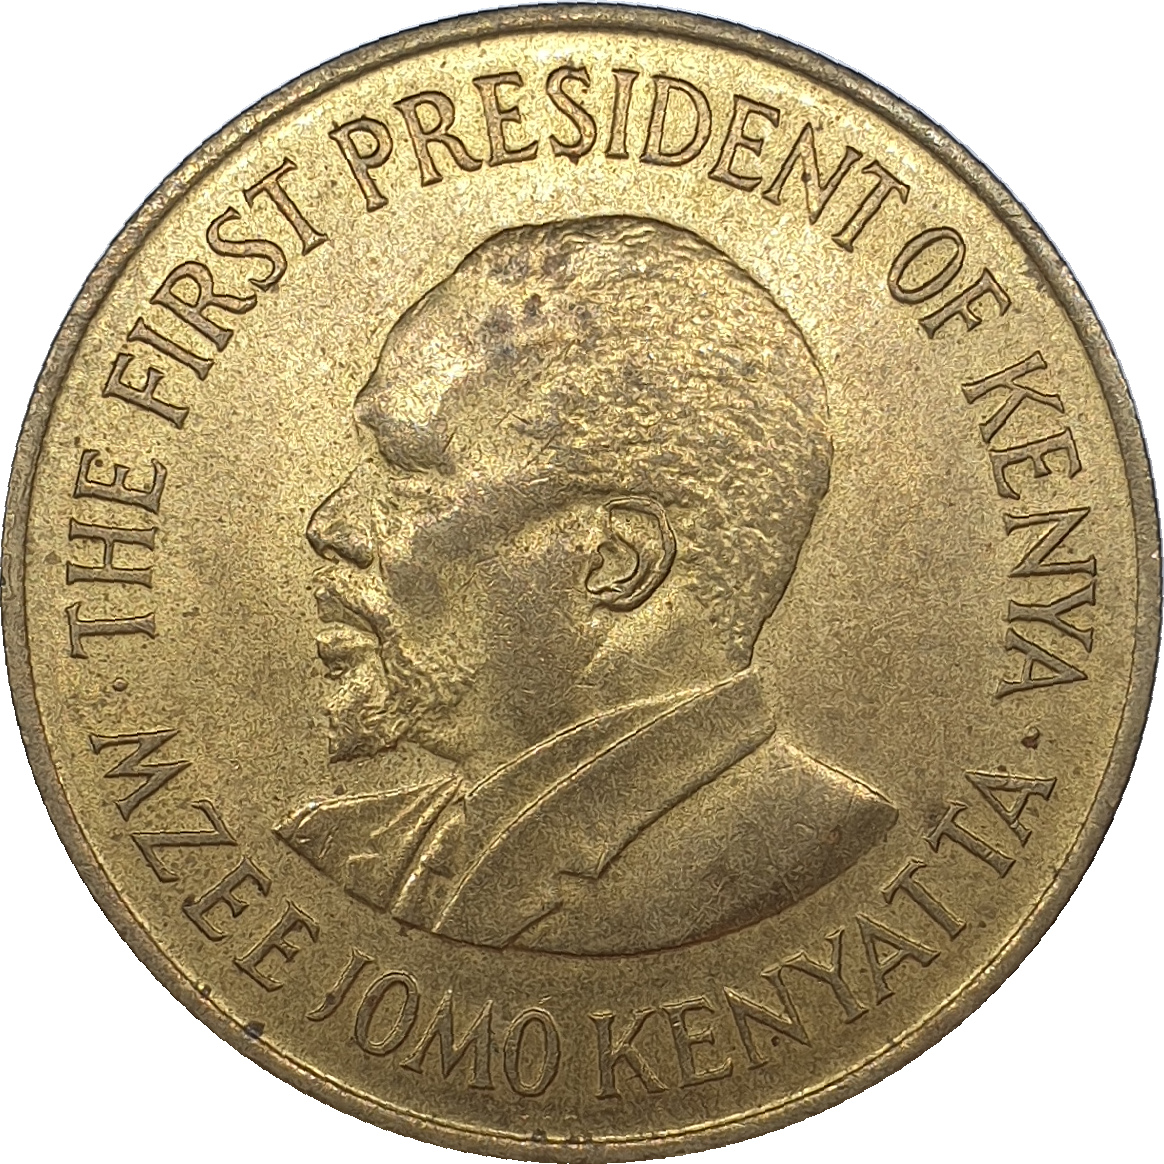 10 cents - Mzee Jomo Kenyatta - With legend